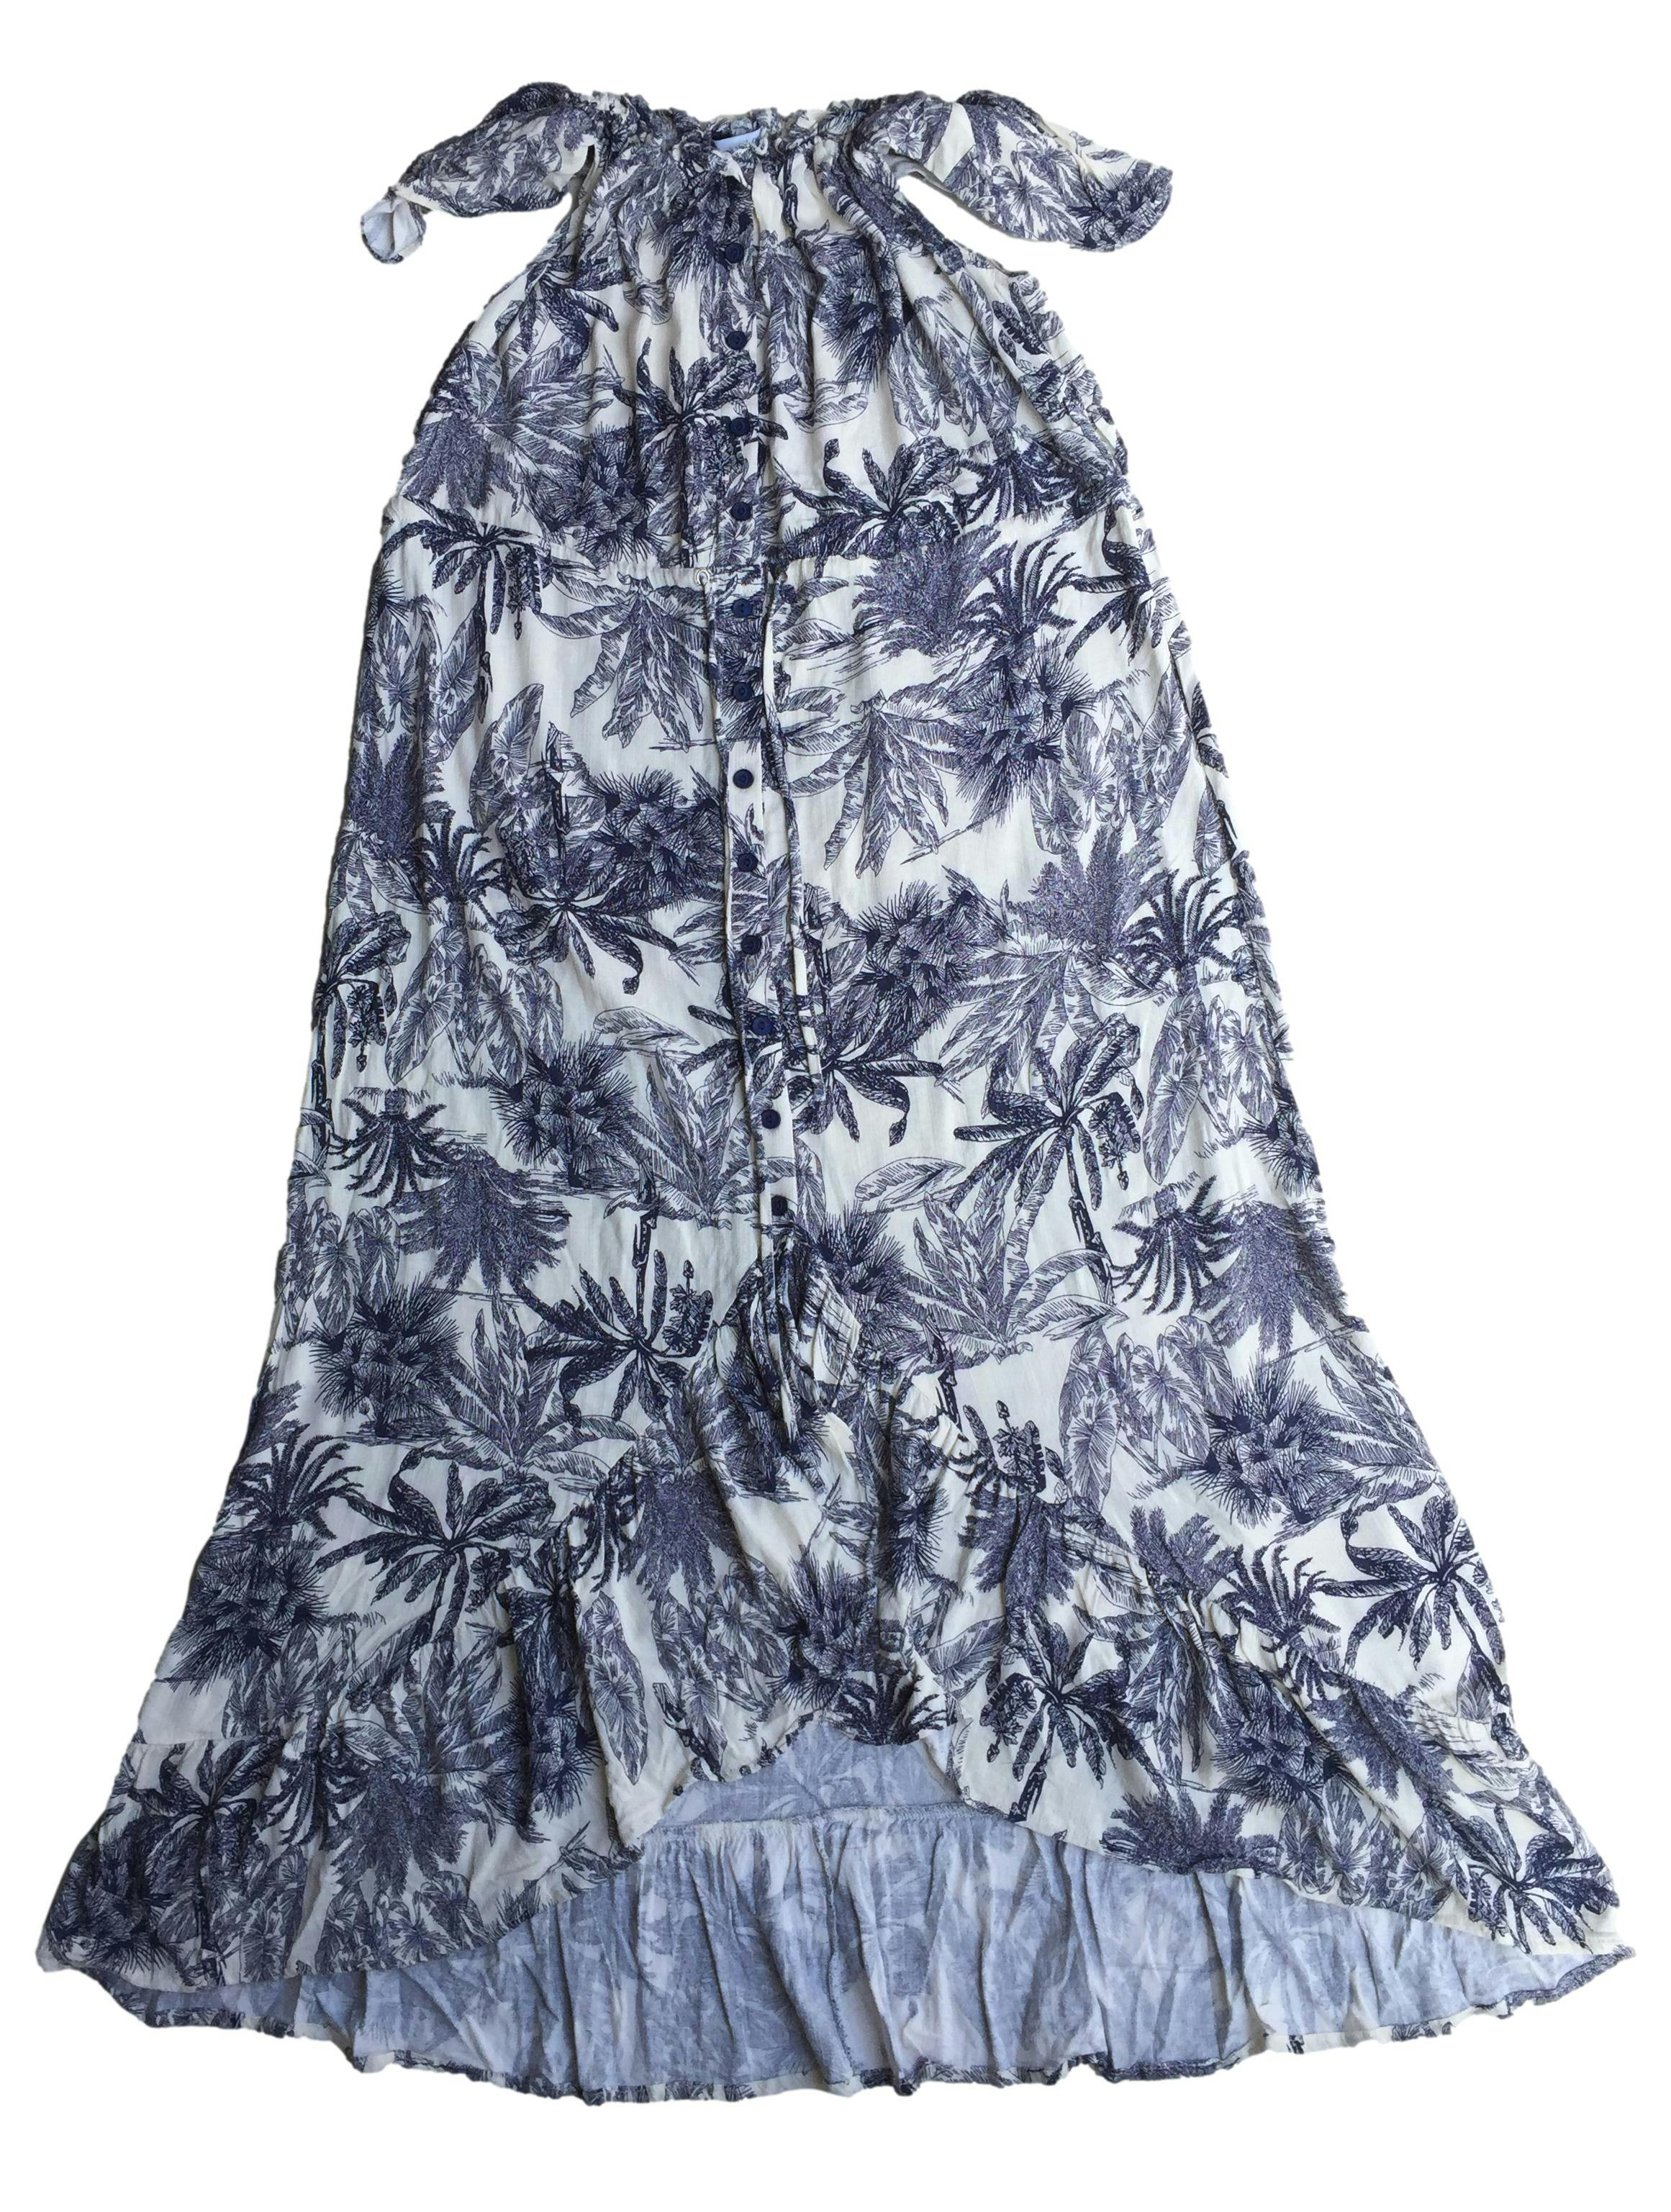 Vestido offshoulder blanco, estampado de flores azules, elástico y cordón en la cintura, botones delanteros. Busto: 100cm, Largo: 120cm